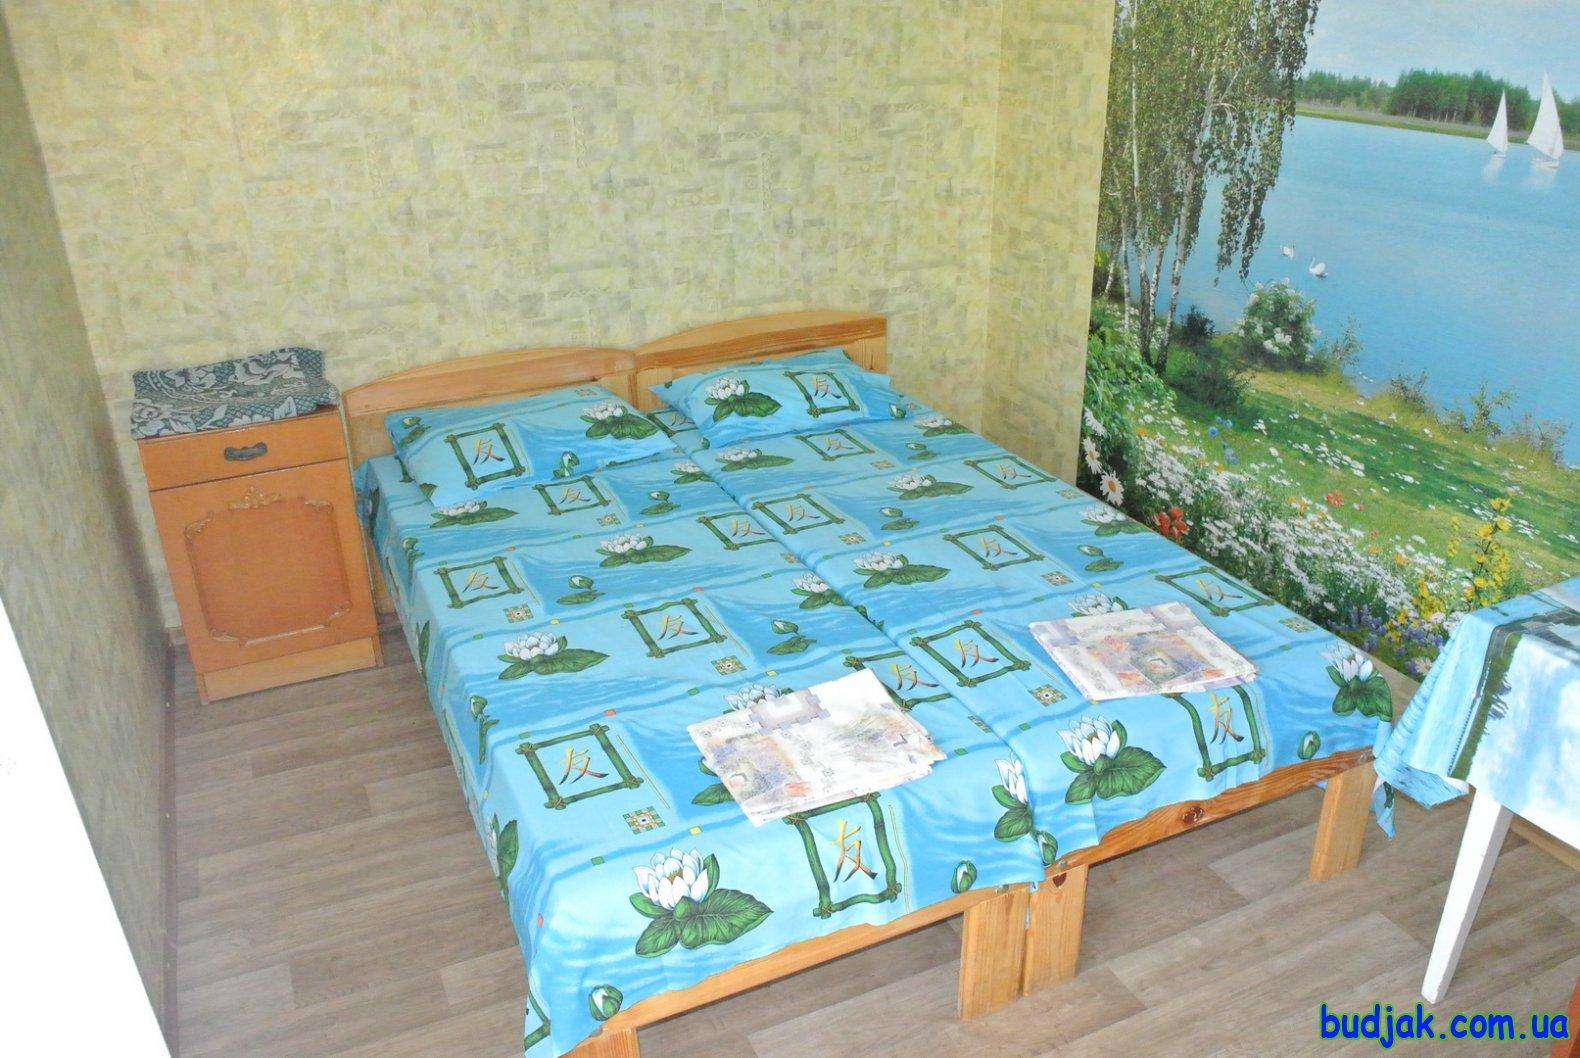 Приватний котедж відпочинку «Дубовий гай» на курорті Лебедівка. Фото № 10973